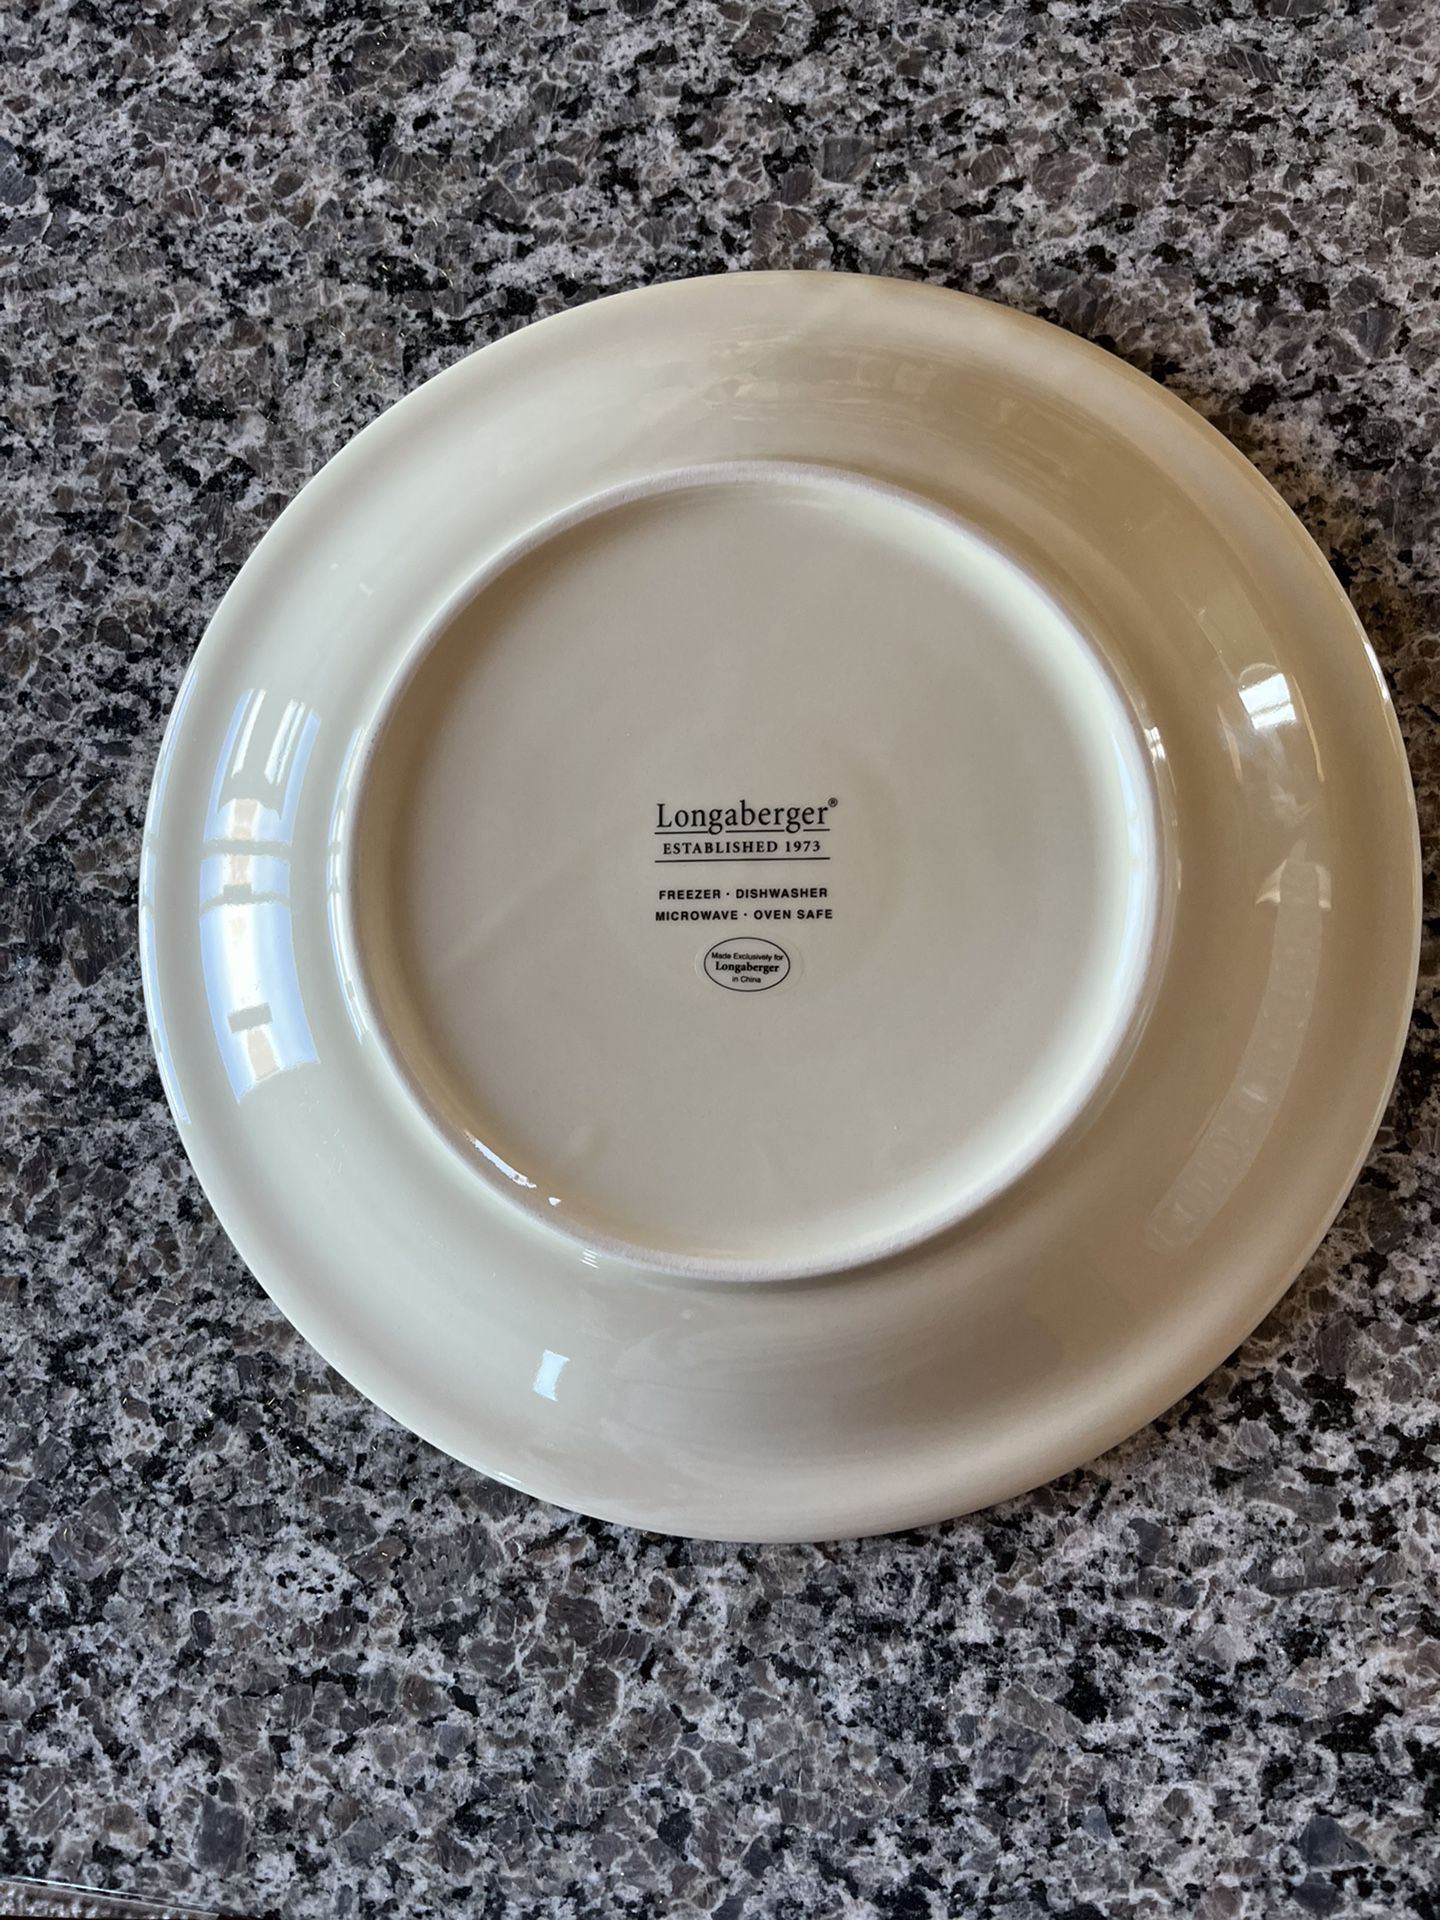 Longaberger Collectors Plate